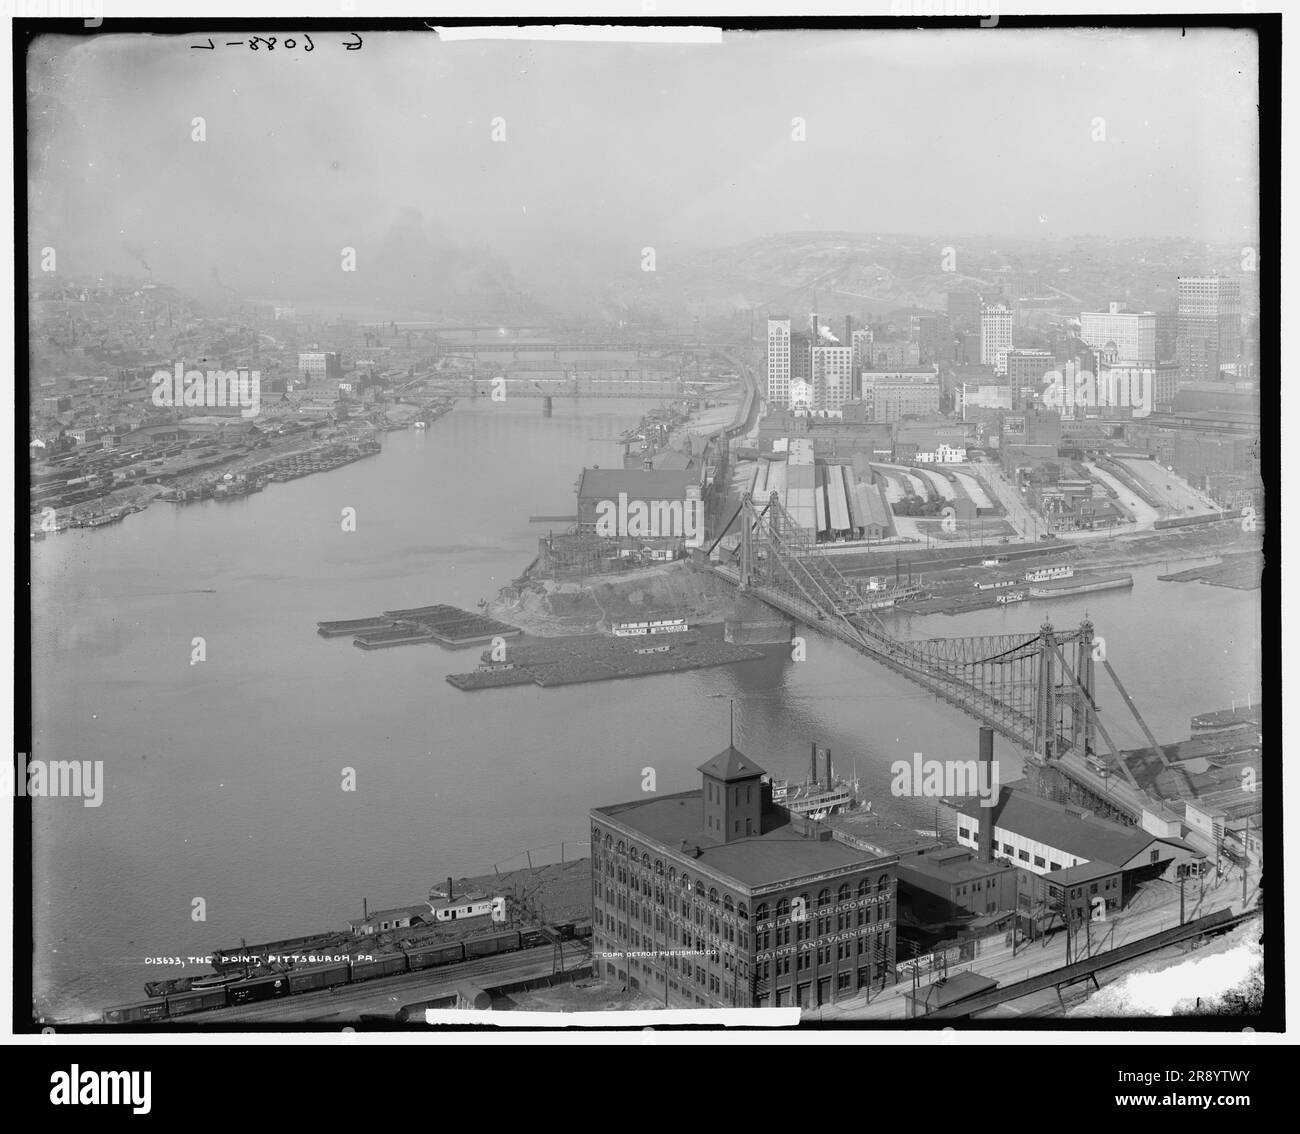 Il punto, Pittsburgh, Pa., tra il 1900 e il 1915. Scena industriale alla confluenza dei fiumi Allegheny e Monongahela, W. W. Lawrence &amp; azienda vernici magazzino e boxcar in primo piano. Foto Stock